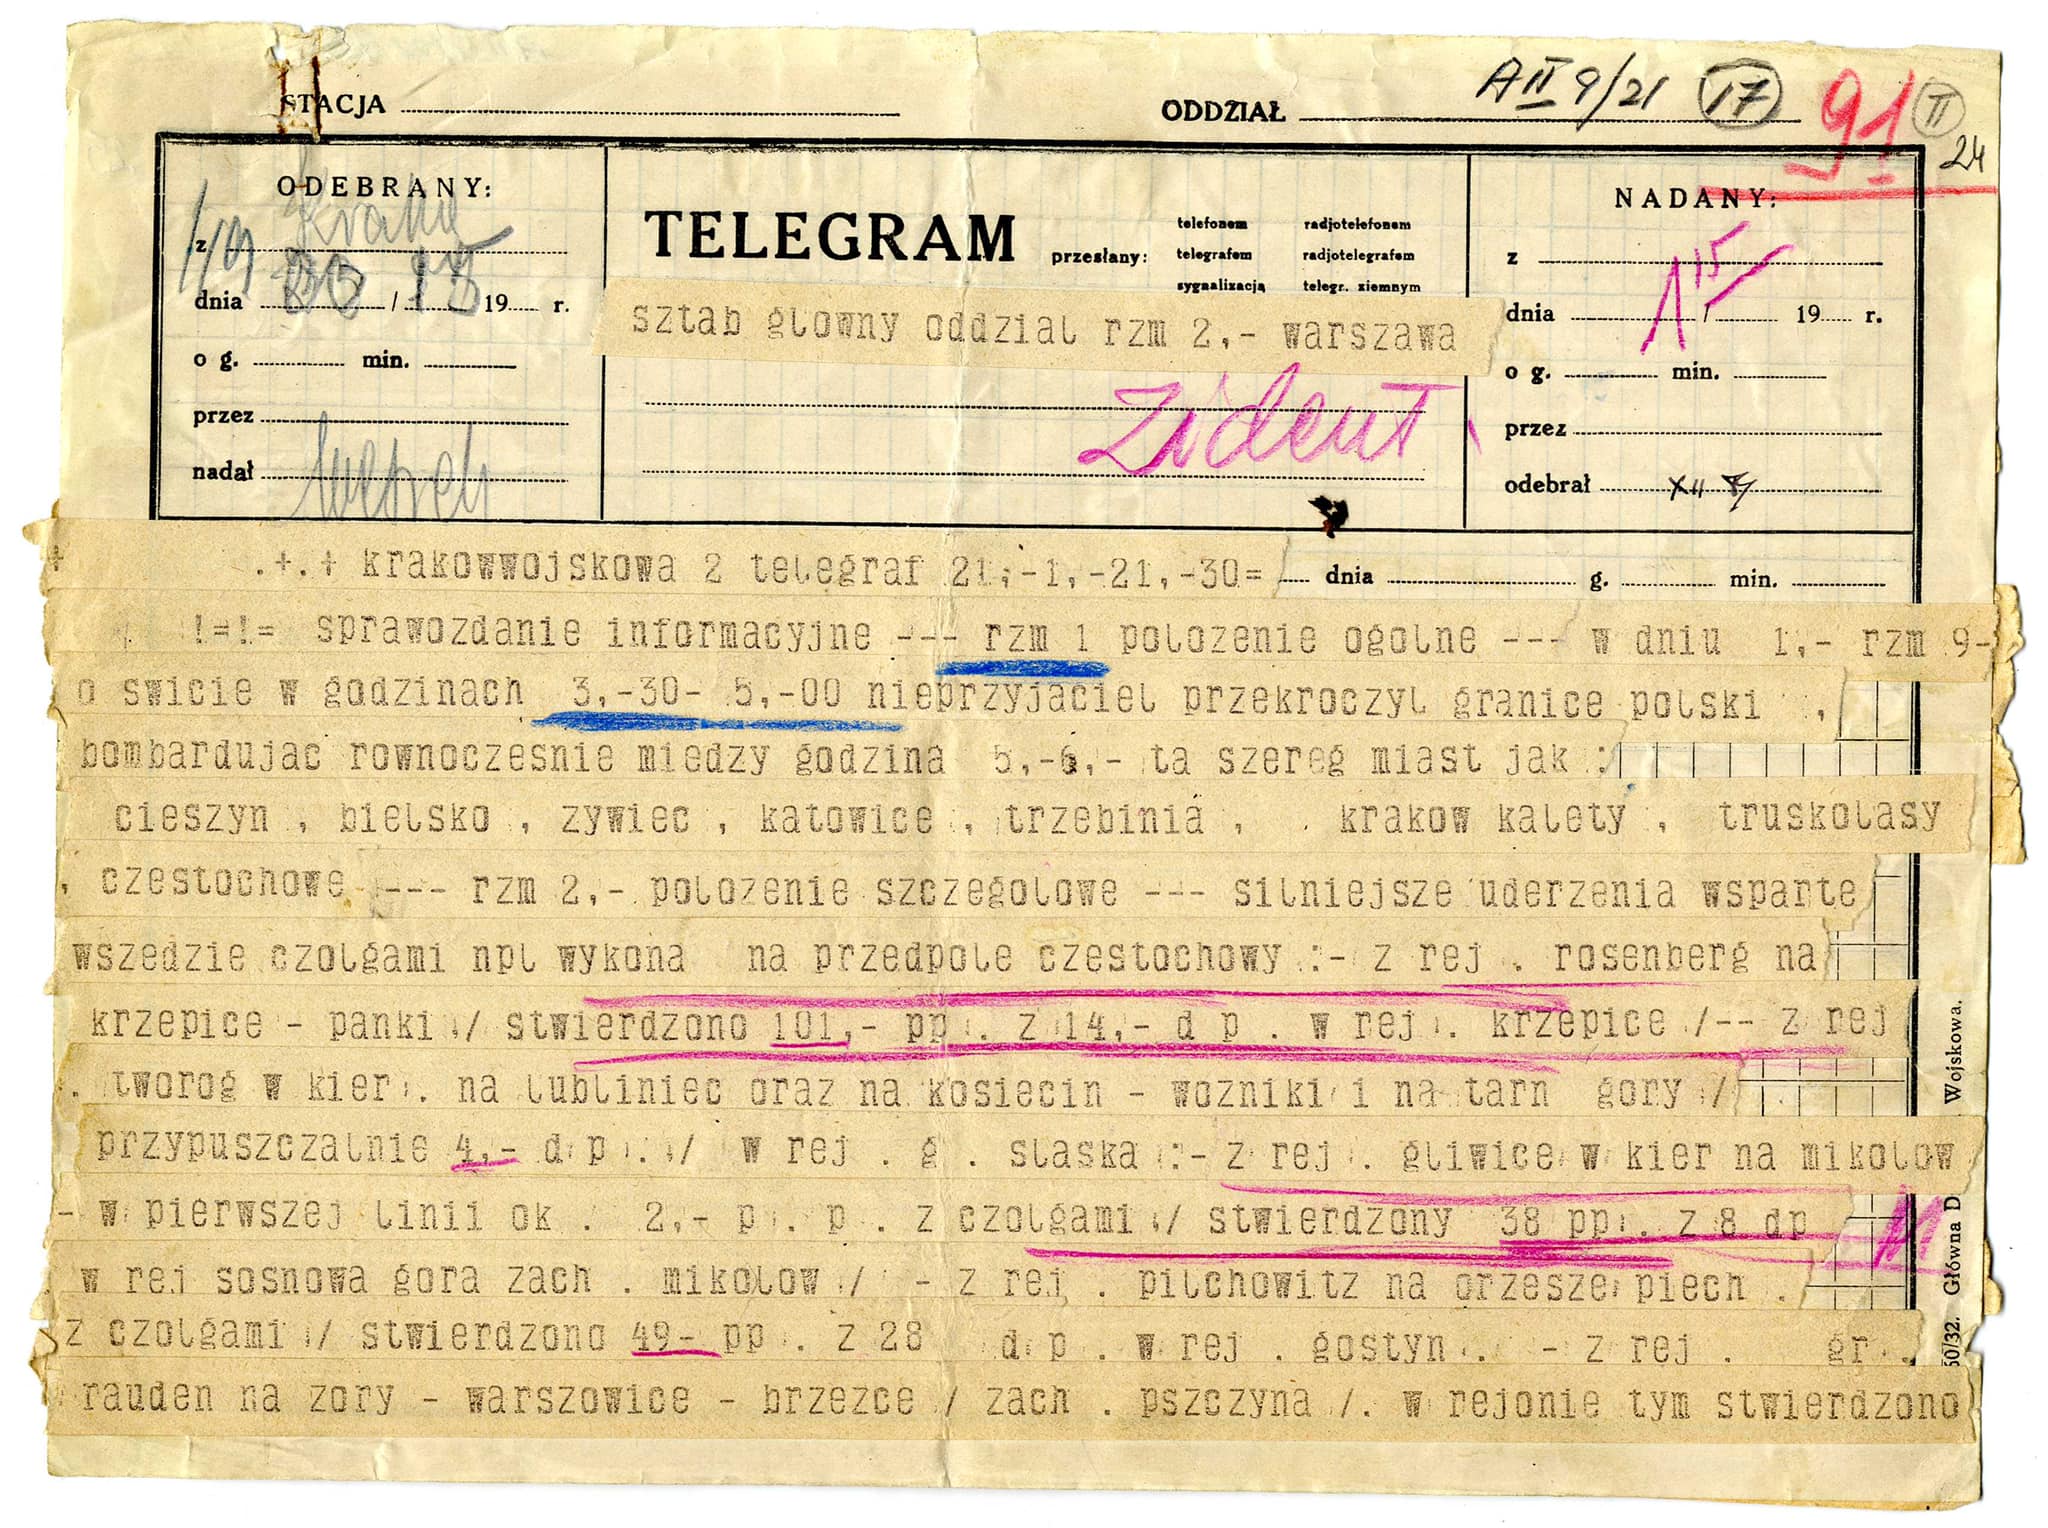 Telegramy nadane przez ppłk Zdona do sztabu Armii Kraków, w któych informuje o tym, że pierewszy kontakt oddziałów polskich z nieprzyjacielem miał miejsce o godz. 3.14 na przedpolach Rybnika, a cała granica, za którą odpowiadała Armia Kraków, została przekroczona przez wroga między 3.30 a 5.00